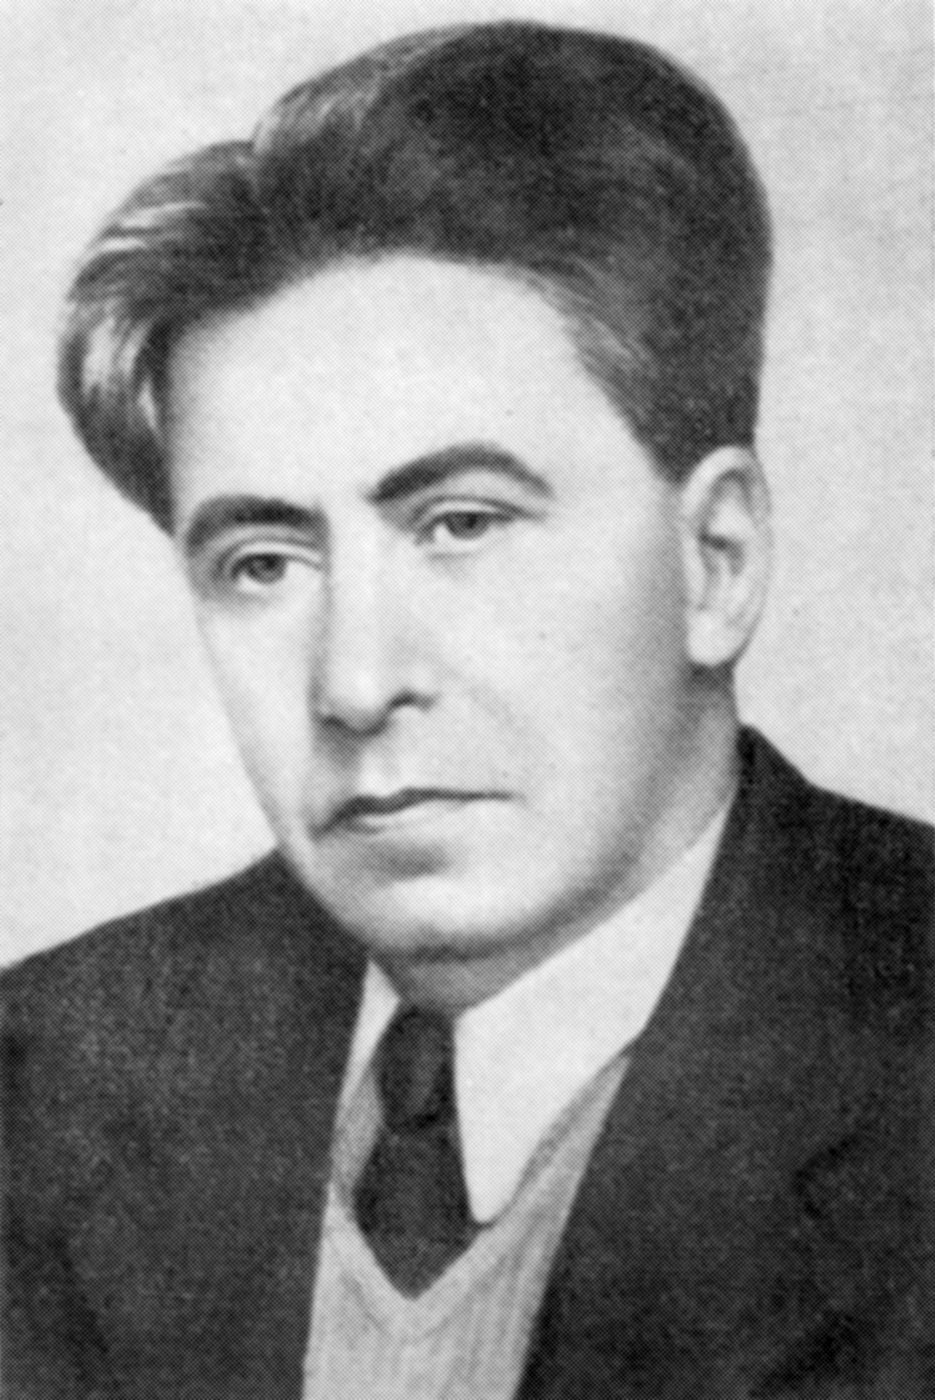 Ilya Ehrenburg